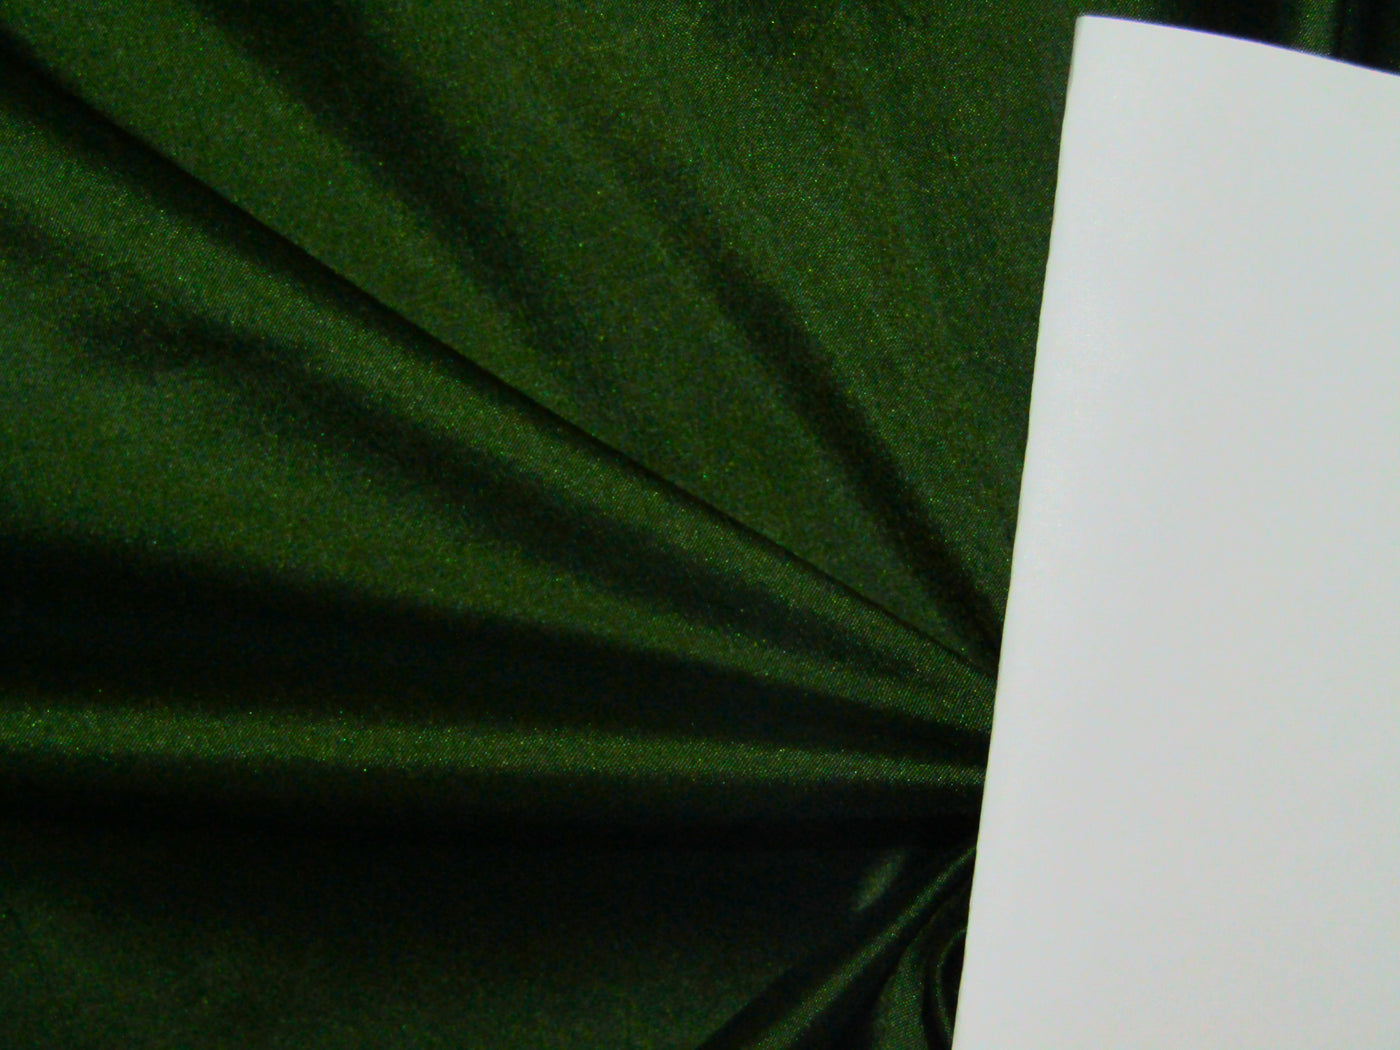 100% PURE SILK DUPIONI FABRIC BRIGHT DARK GREEN color 54" wide DUP380[1]